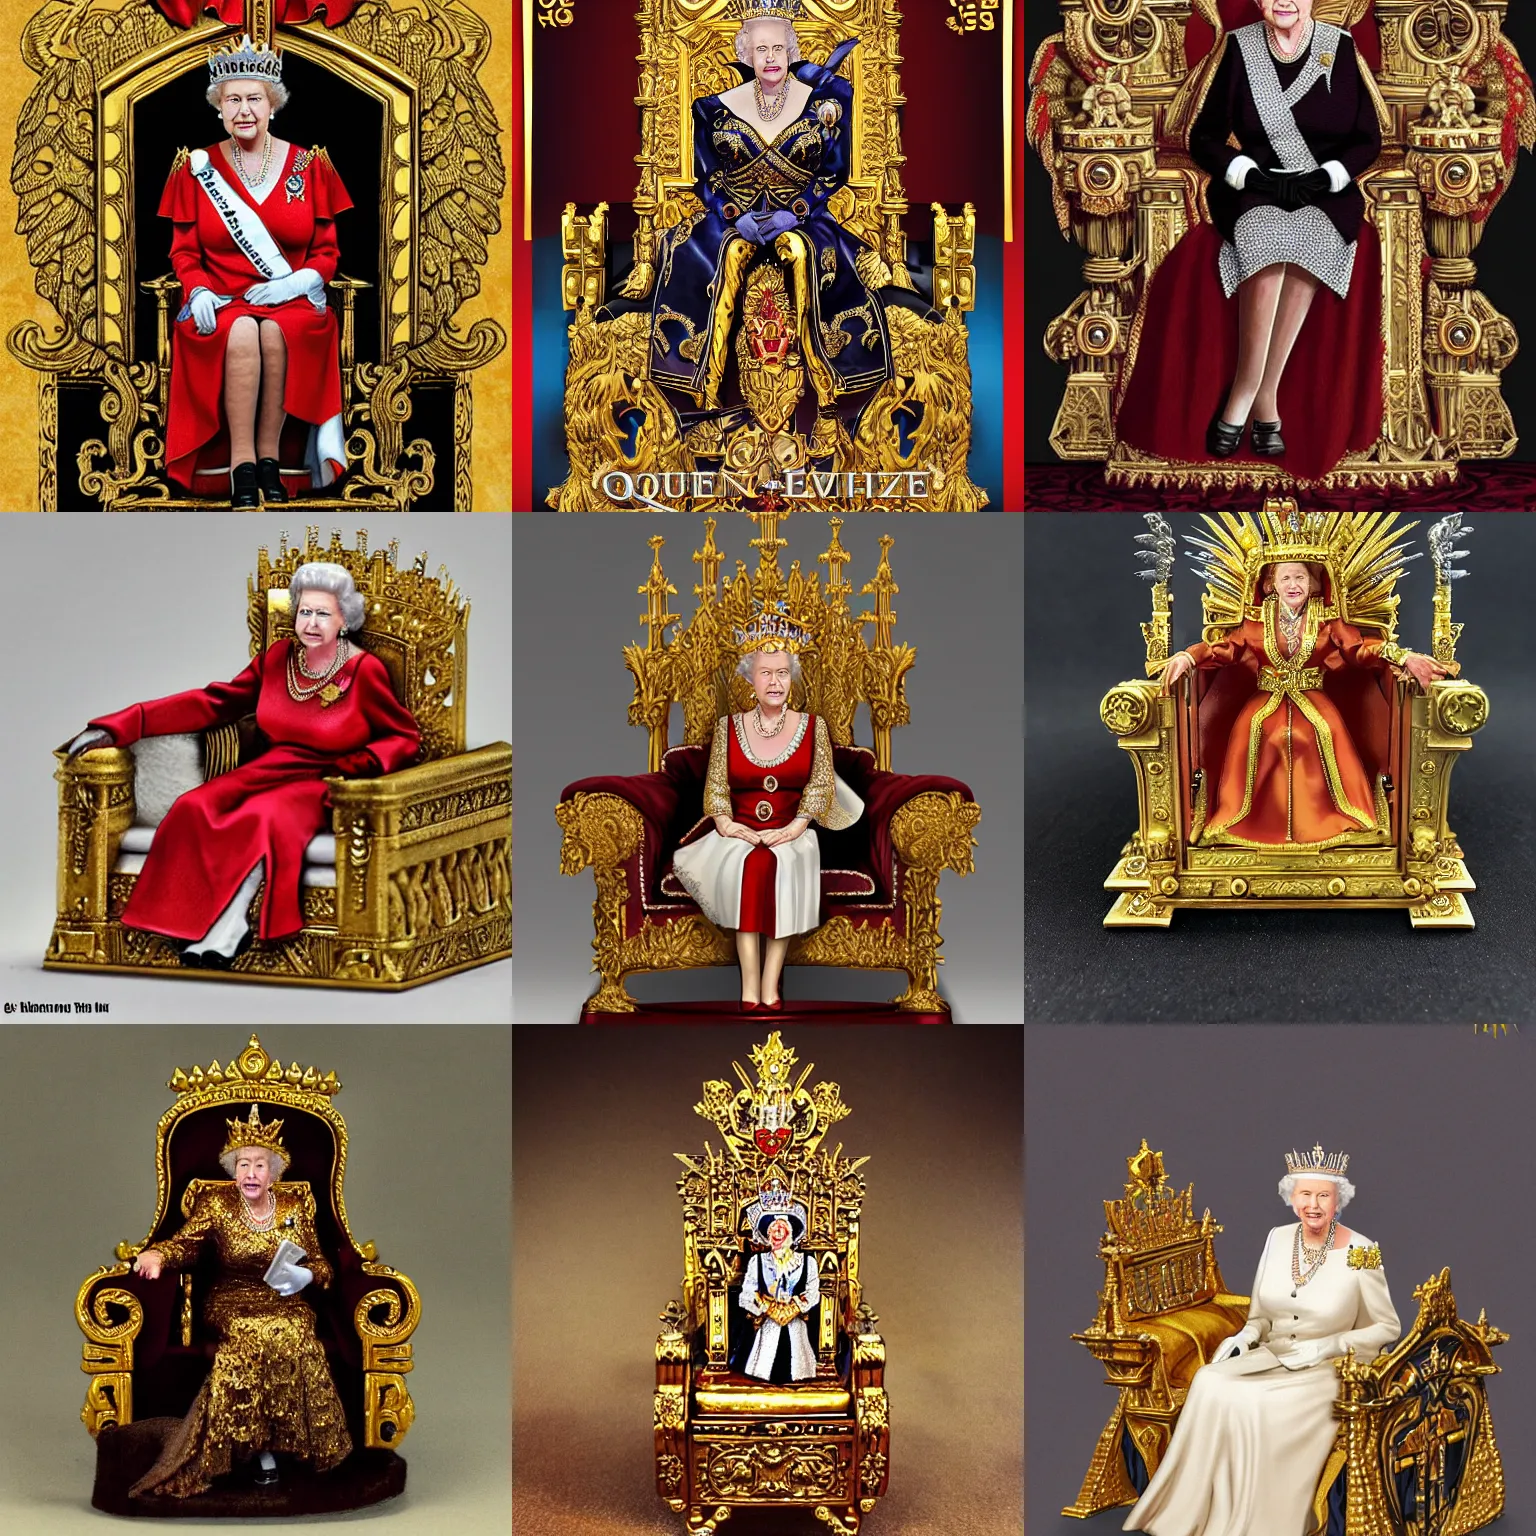 Prompt: Queen Elizabeth 22 on the golden throne, warhammer art